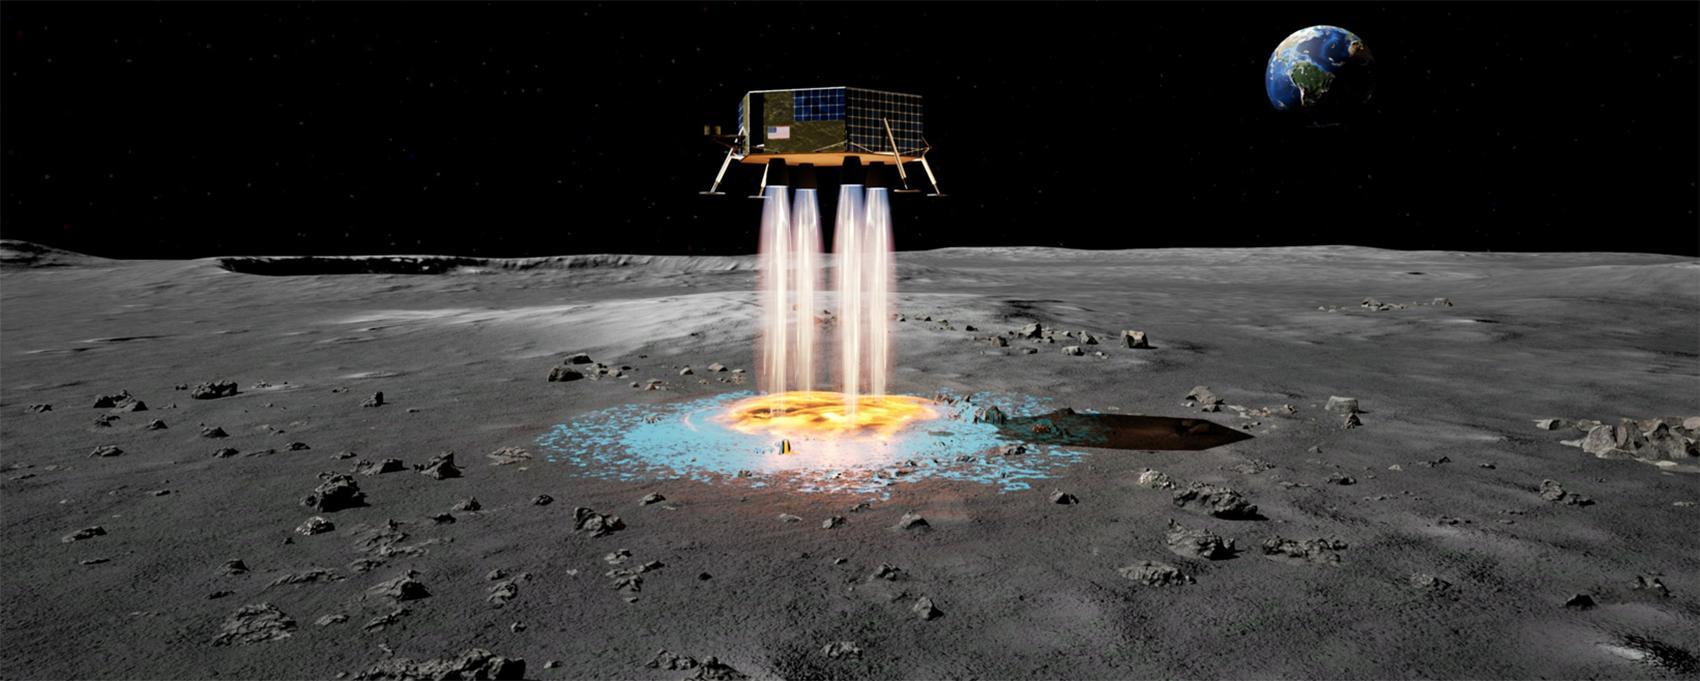 Як створити на Місяці посадковий майданчик, не саджаючи на супутник корабель - Новини технологій - Техно